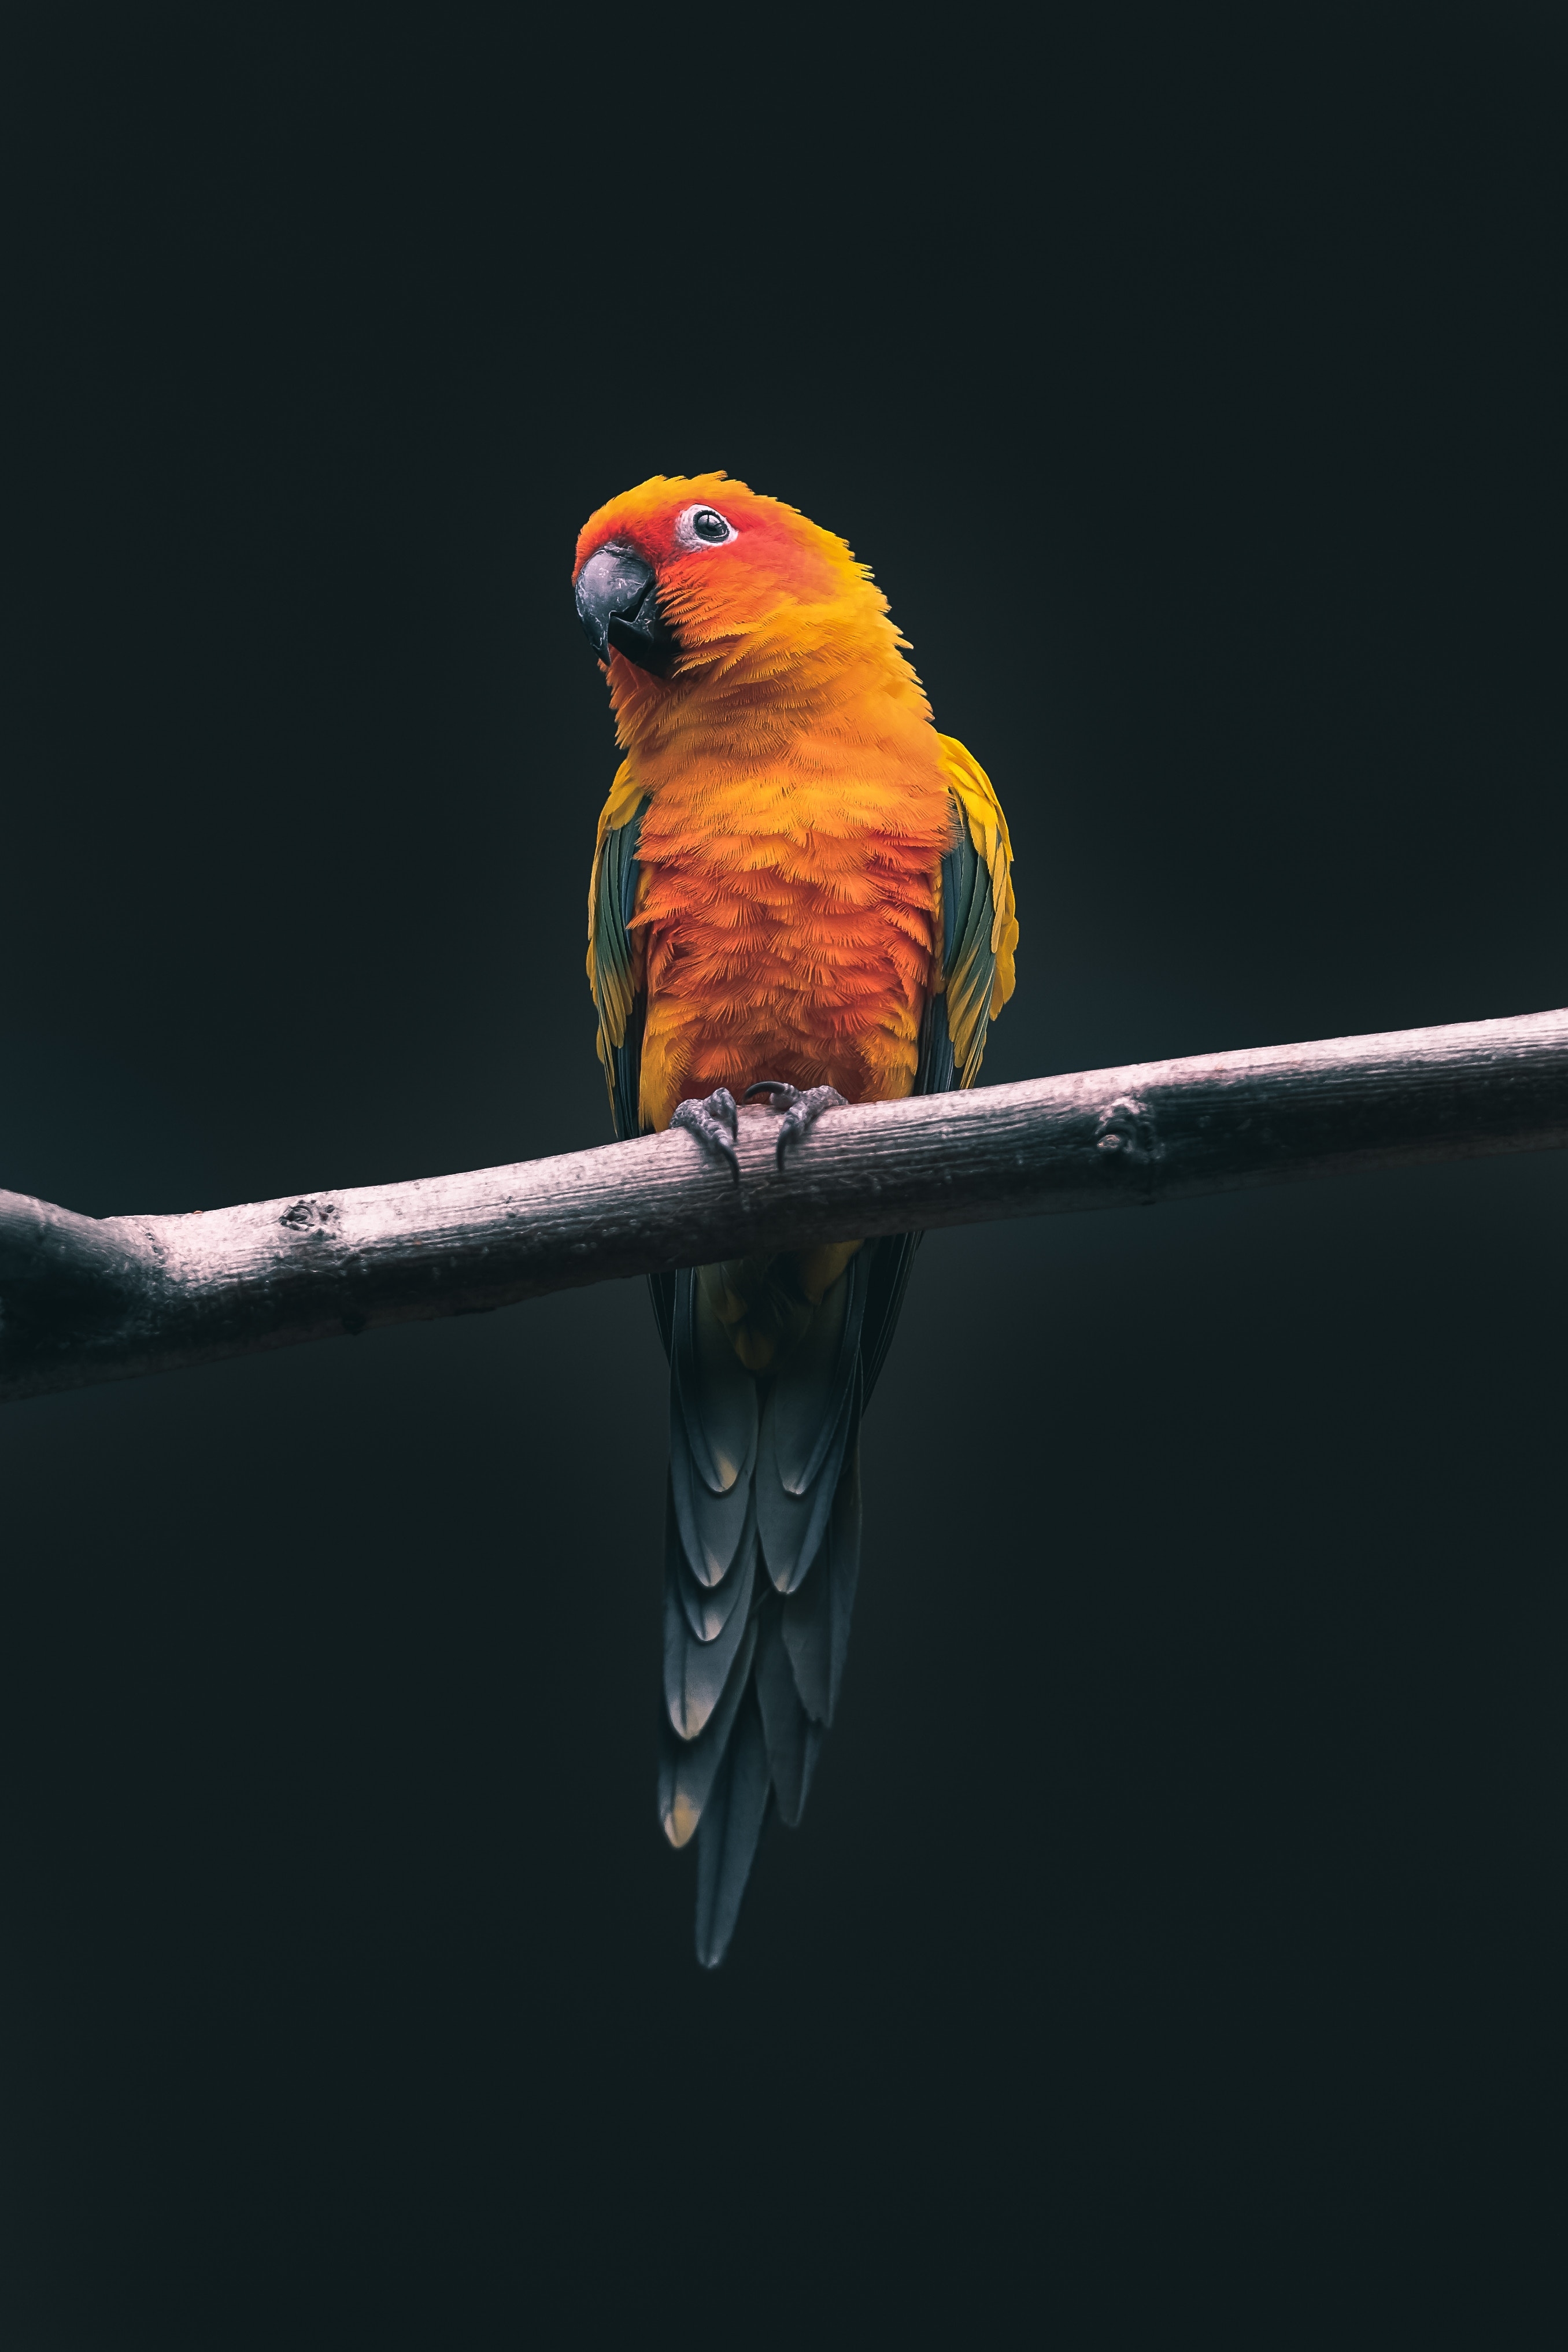 漂亮可爱的鹦鹉手机壁纸_动物图片_素材吧